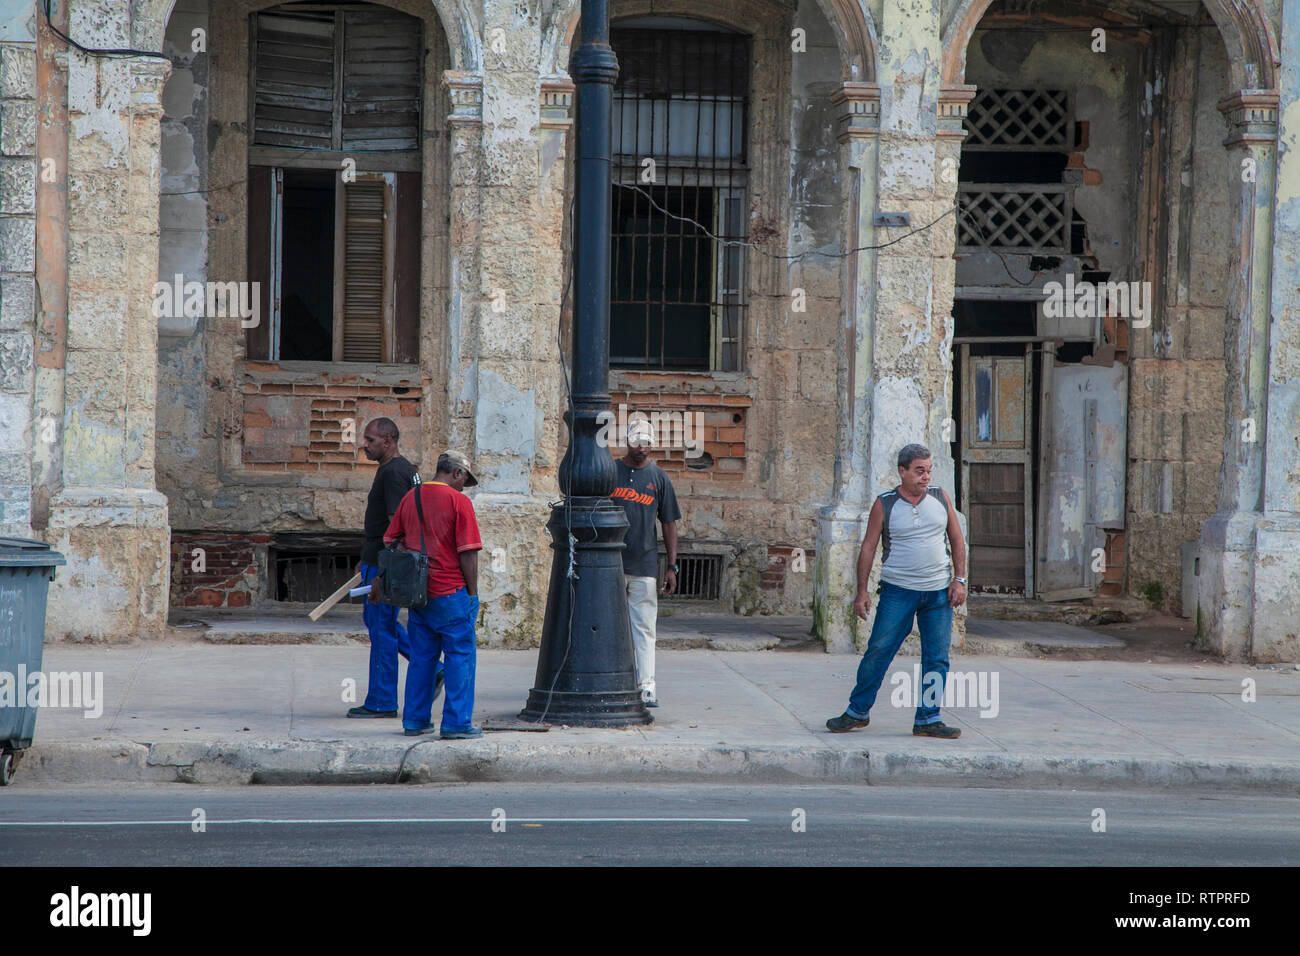 L'Avana, Cuba - 22 Gennaio 2013: una vista delle strade della città con il popolo cubano. Quattro uomini sono in attesa per il bus. Foto Stock